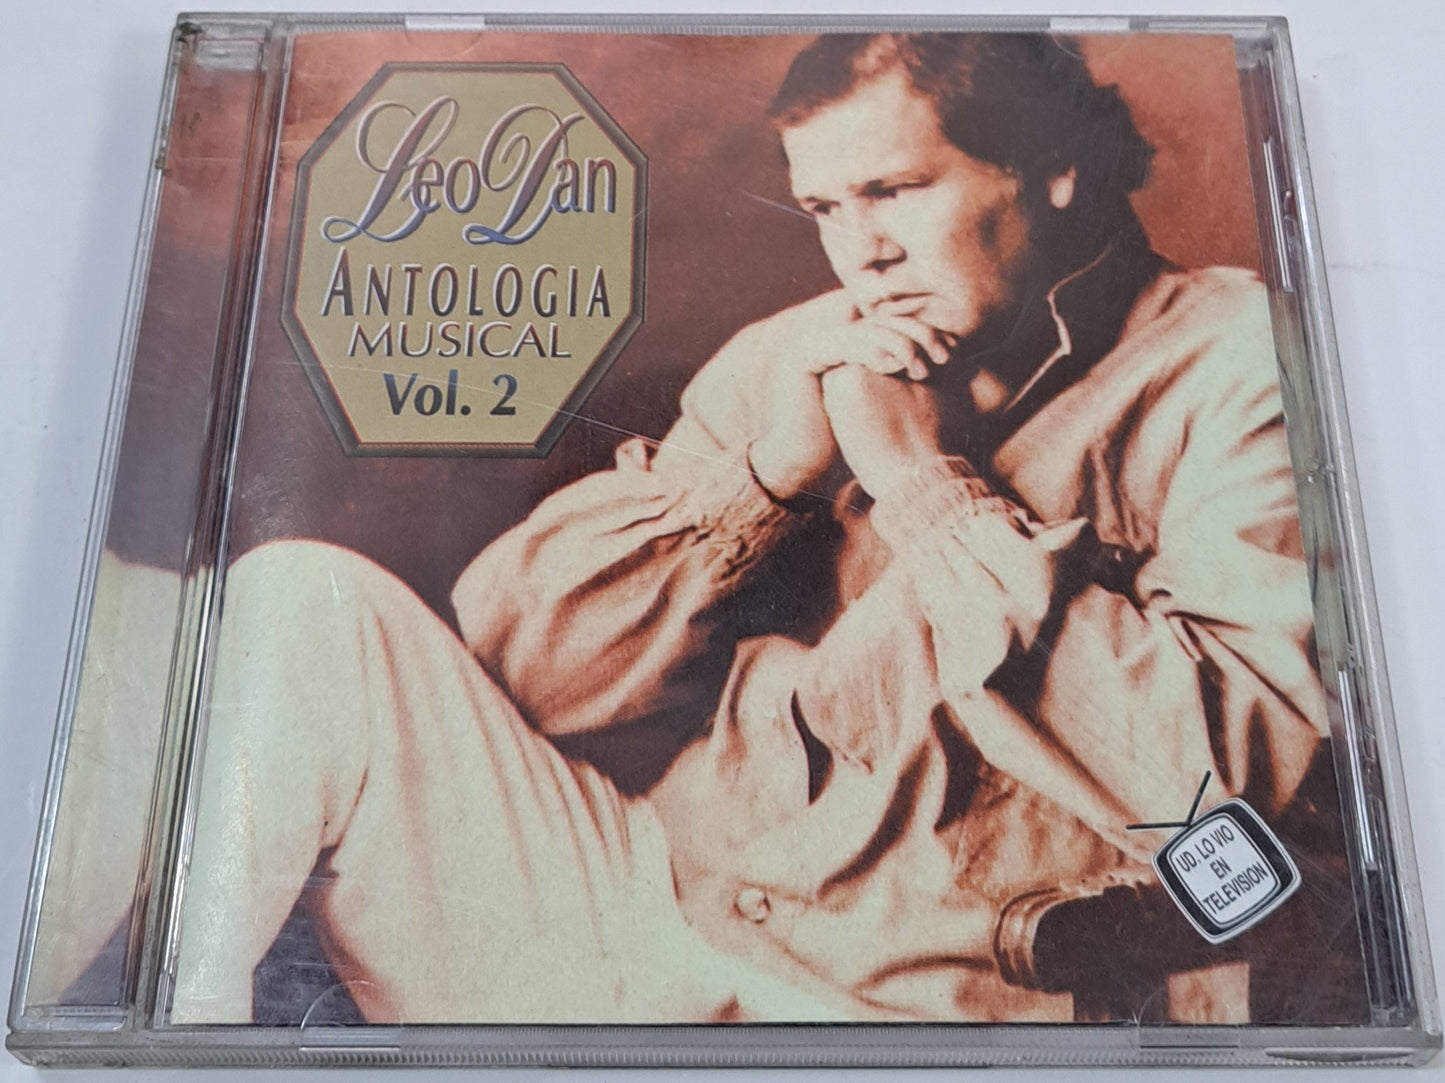 LEO DAN - ANTOLOGIA MUSICAL VOL 2 CD